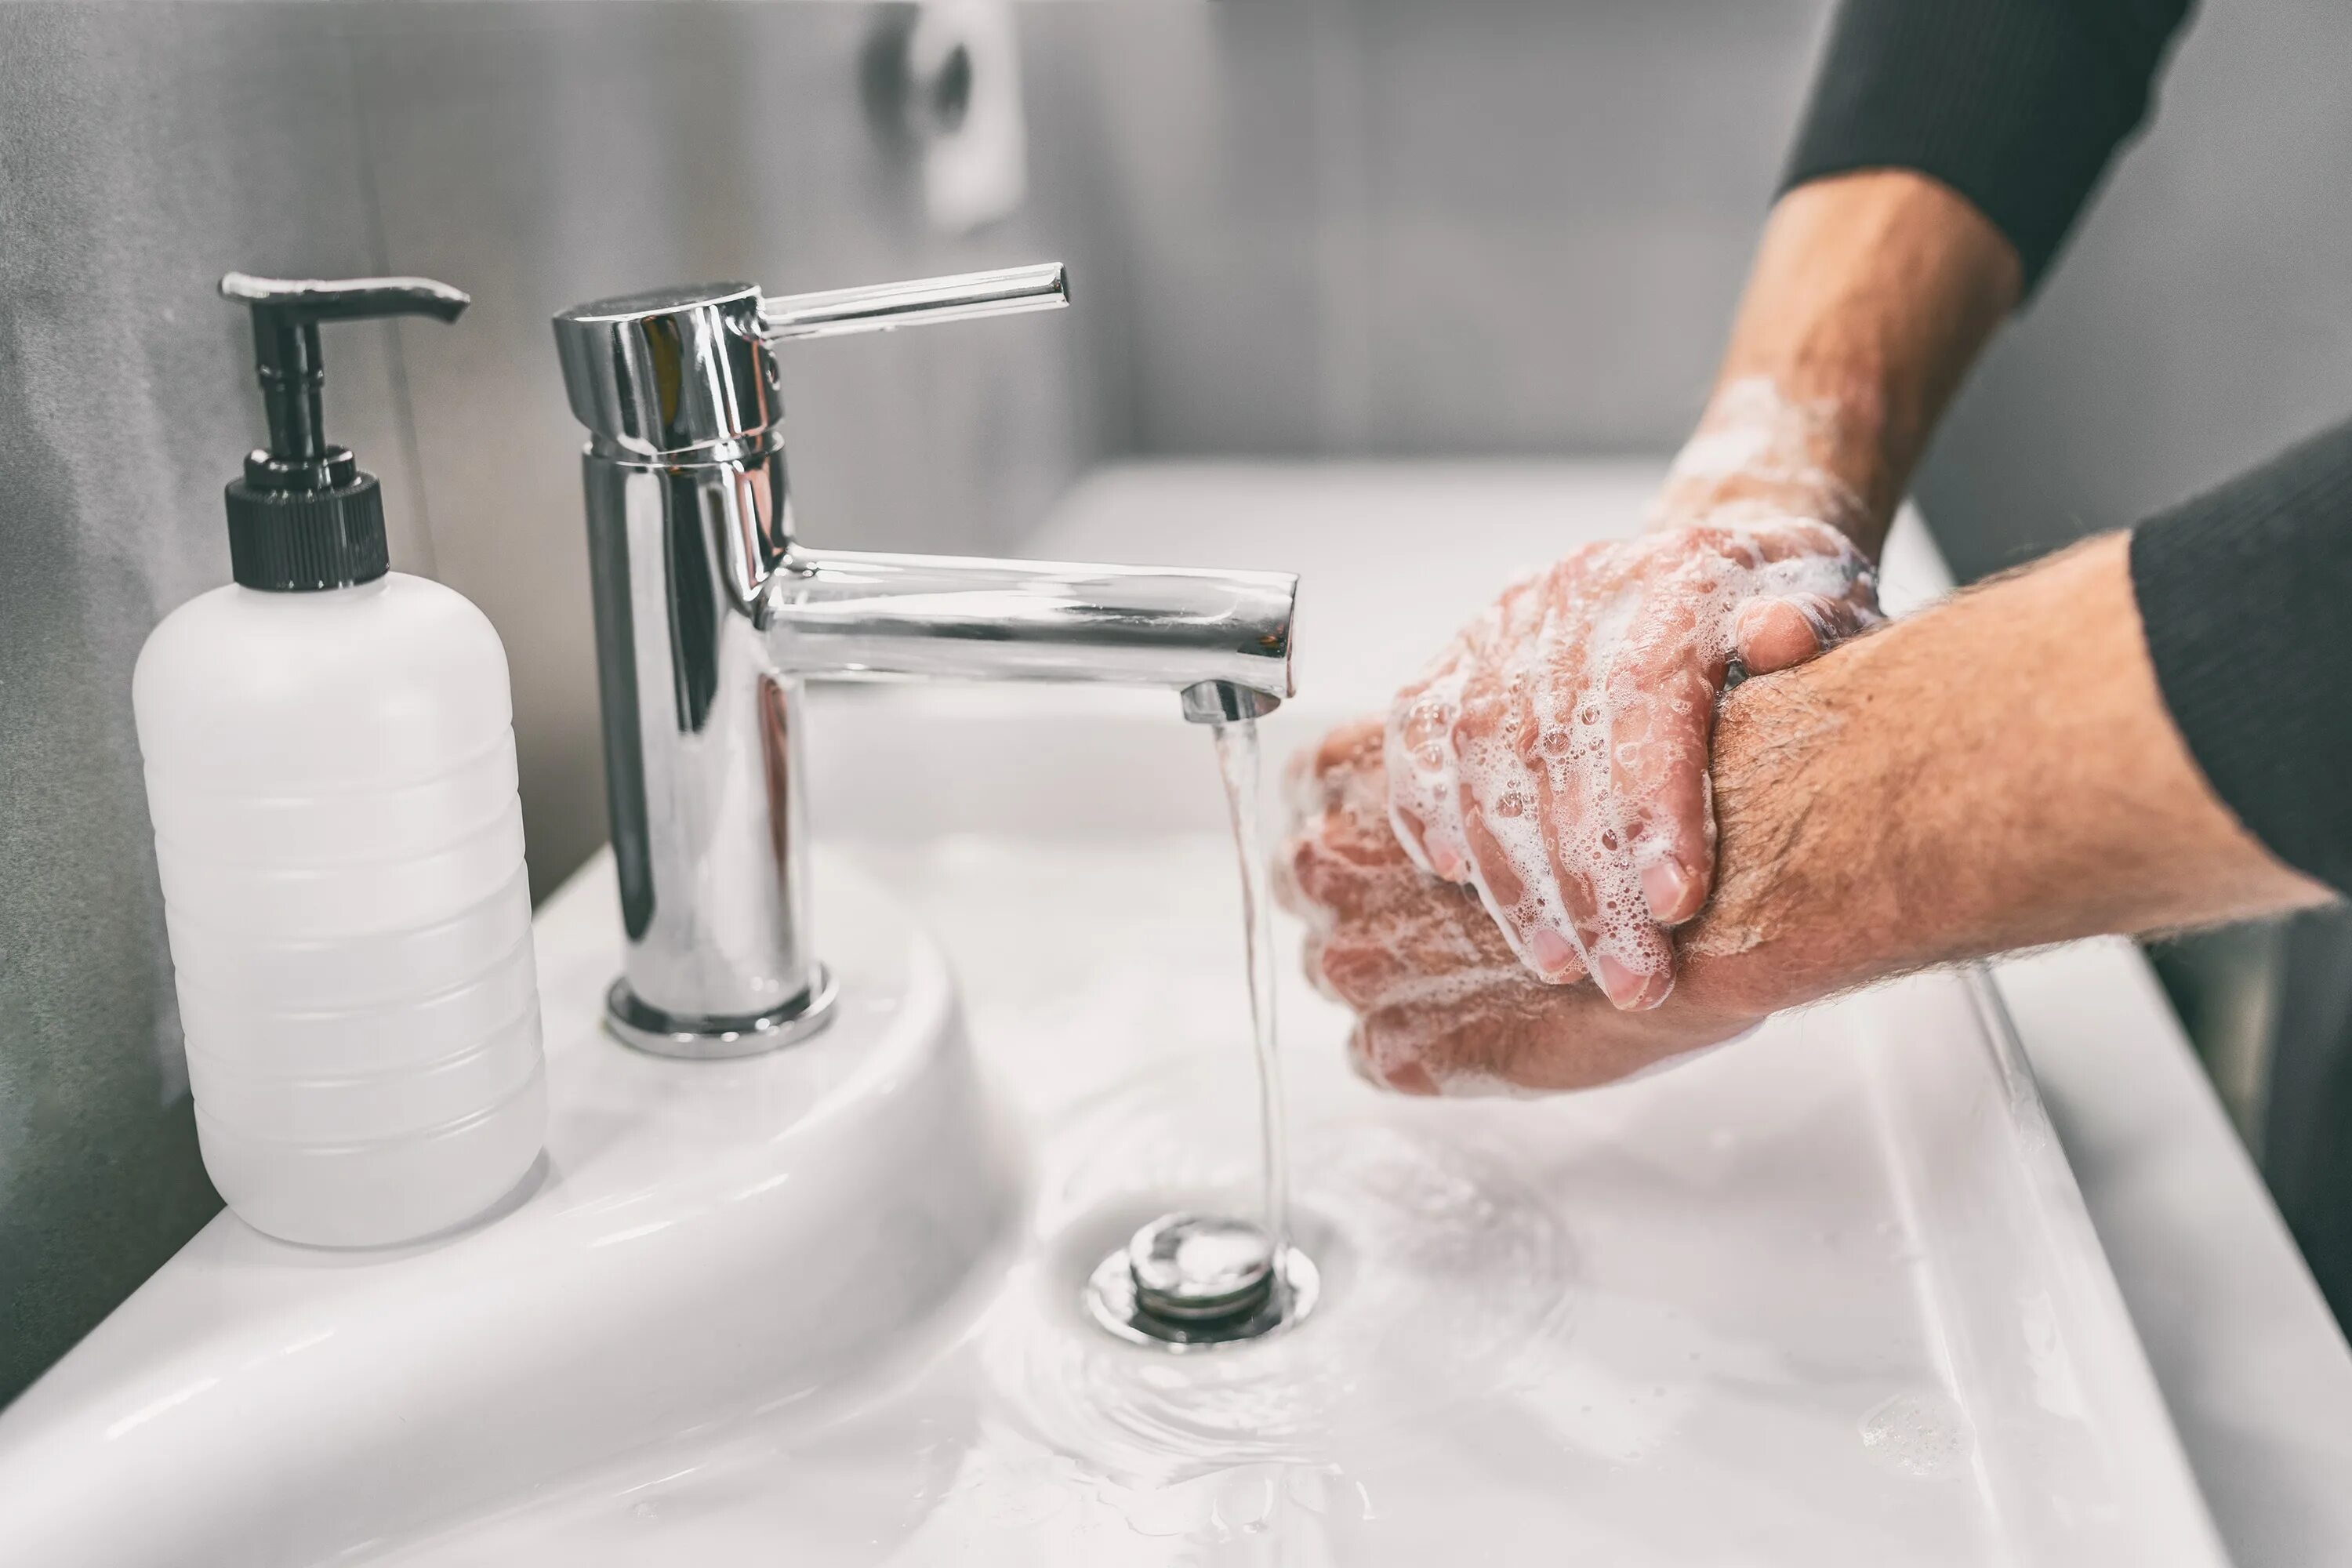 Мытье рук. Мытье рук с мылом. Гигиена рук. Гигиена мытья рук.